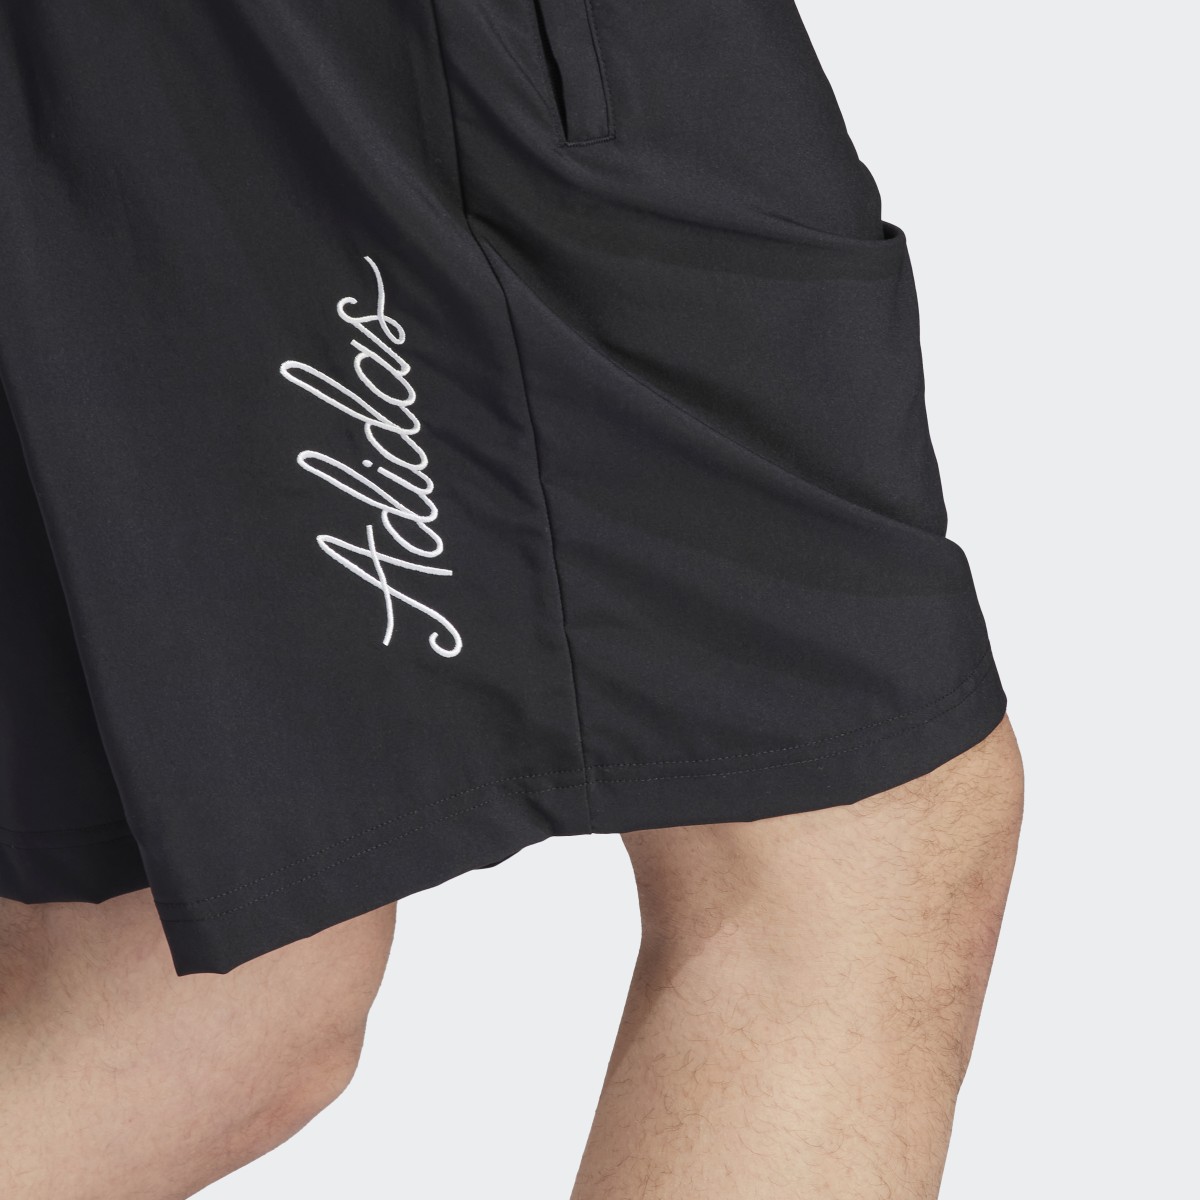 Adidas Scribble Shorts. 5